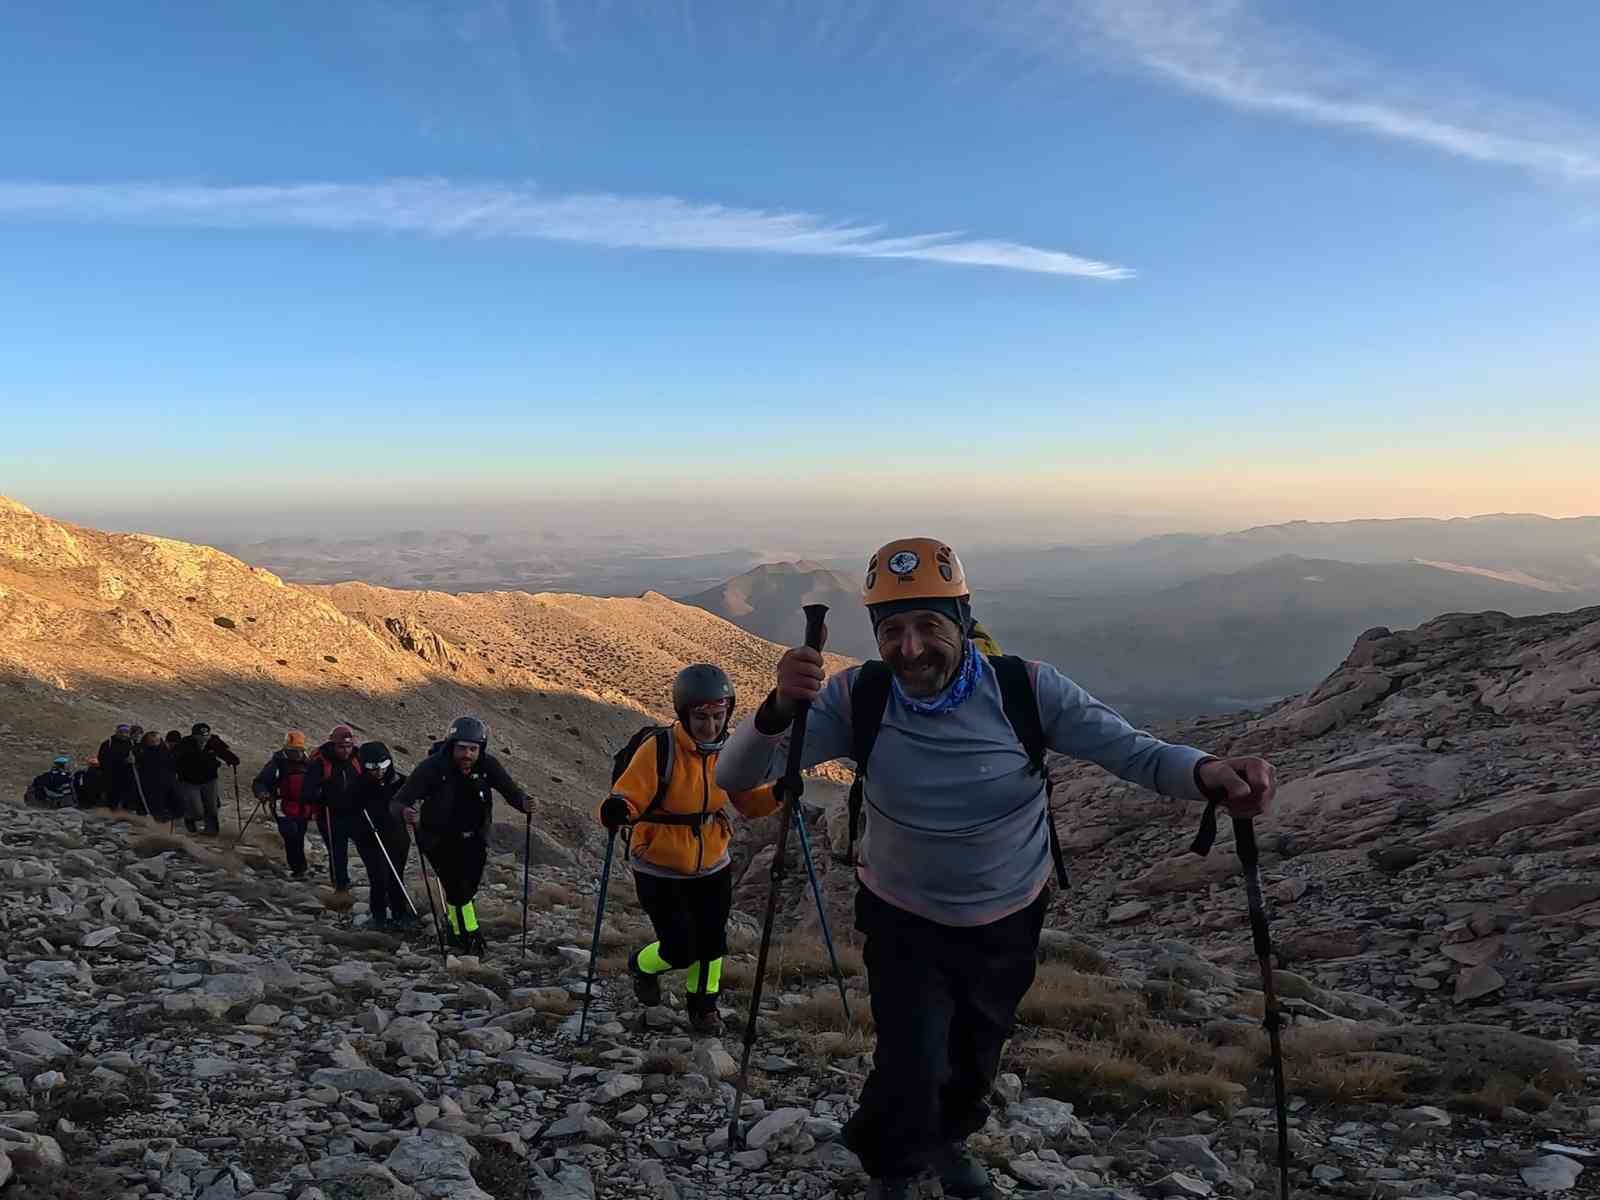 Erciyes’e 100. yıl tırmanışı yapılacak